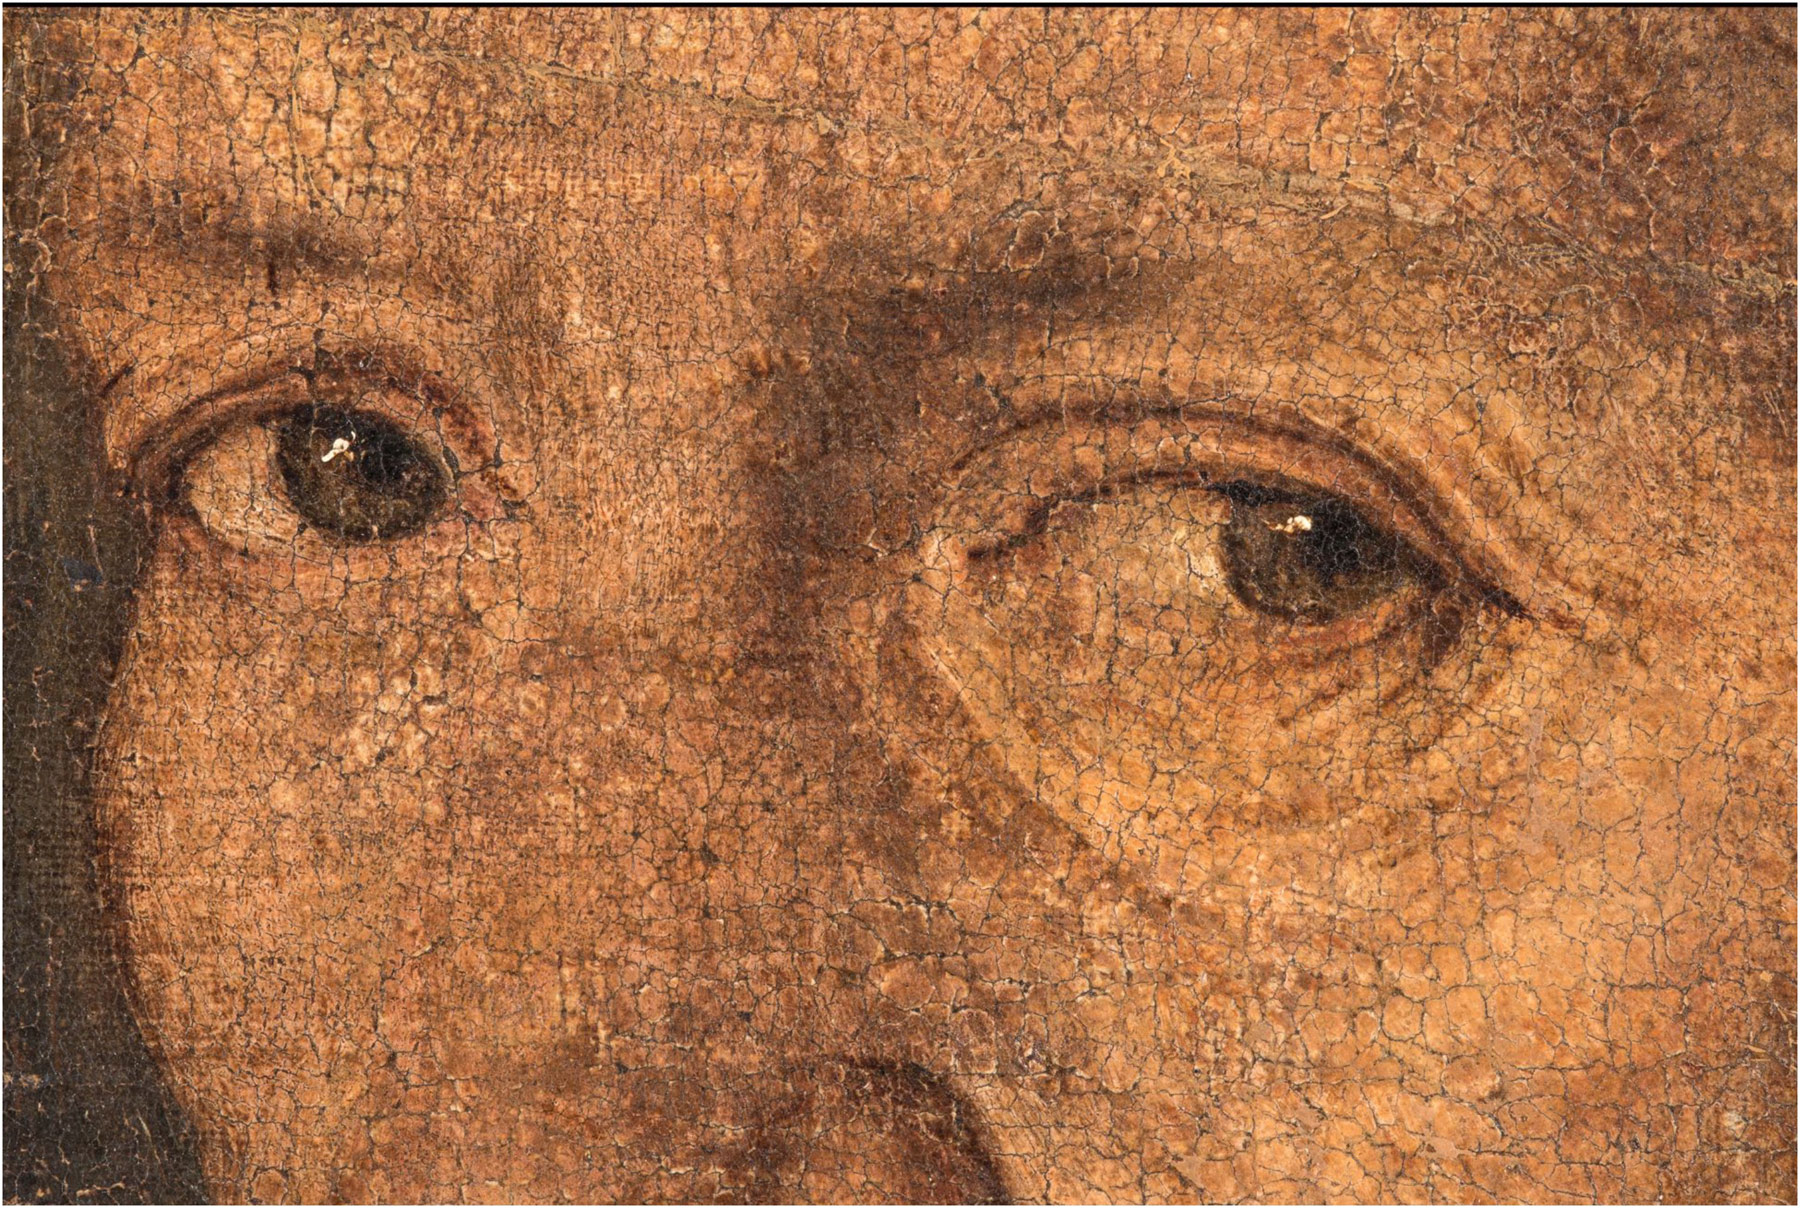 Giorgione, La Vecchia, macrofotografie degli occhi nel visibile